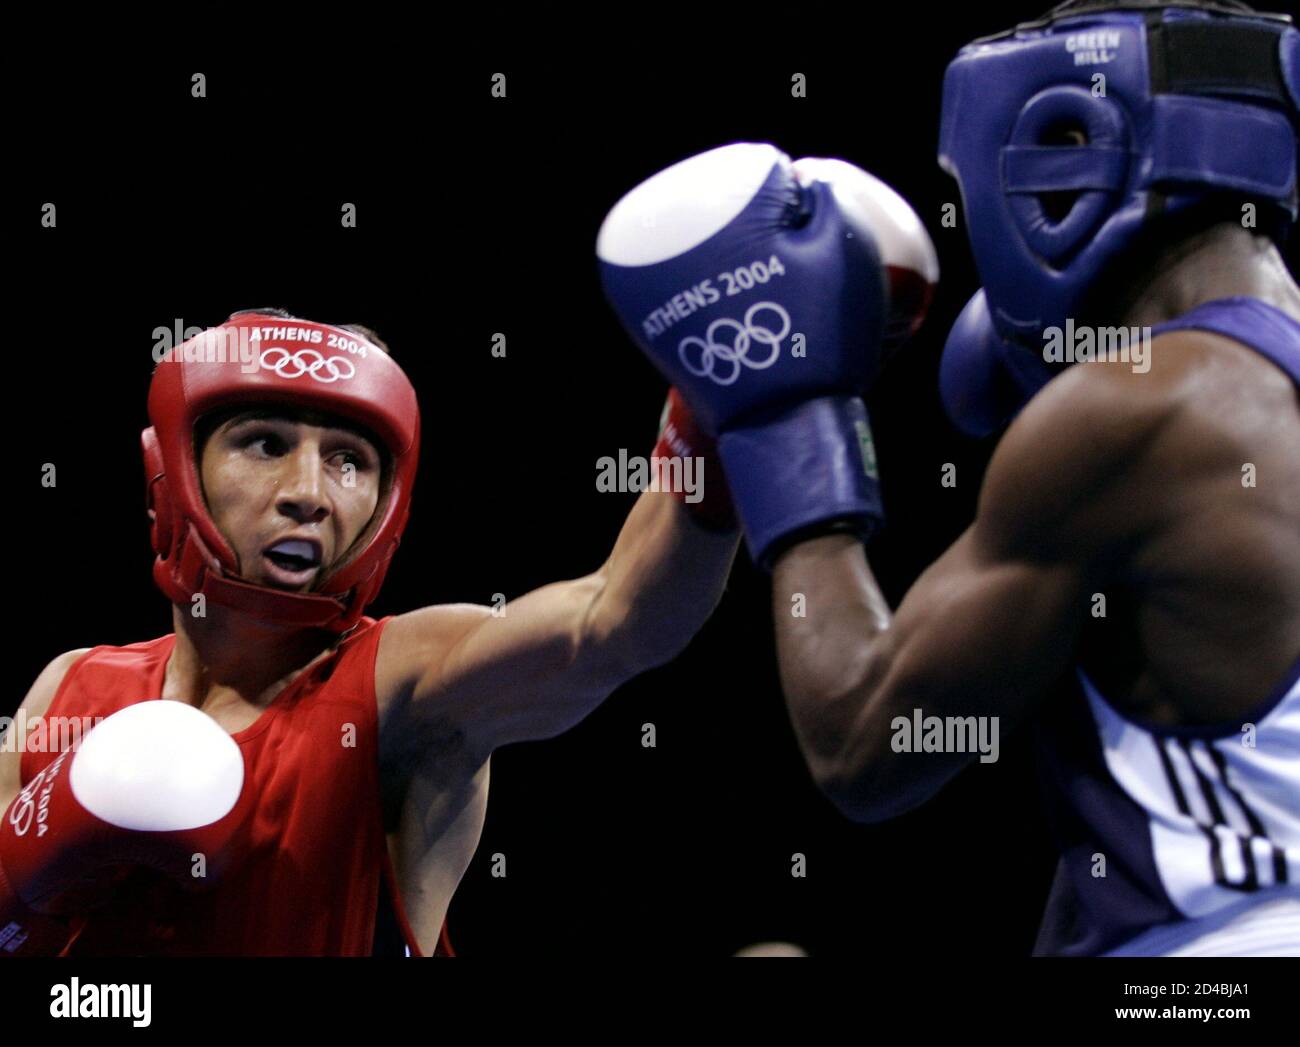 Kasachstan Galib Jafarov schlägt Ugandas Brian Mayanja während ihre Männer Feder Gewicht (57kg) Runde der 32 Boxkampf in Athen 2004 Olympische Sommer Spiele August 16, 2004. Jafarov gewann den Kampf. Stockfoto